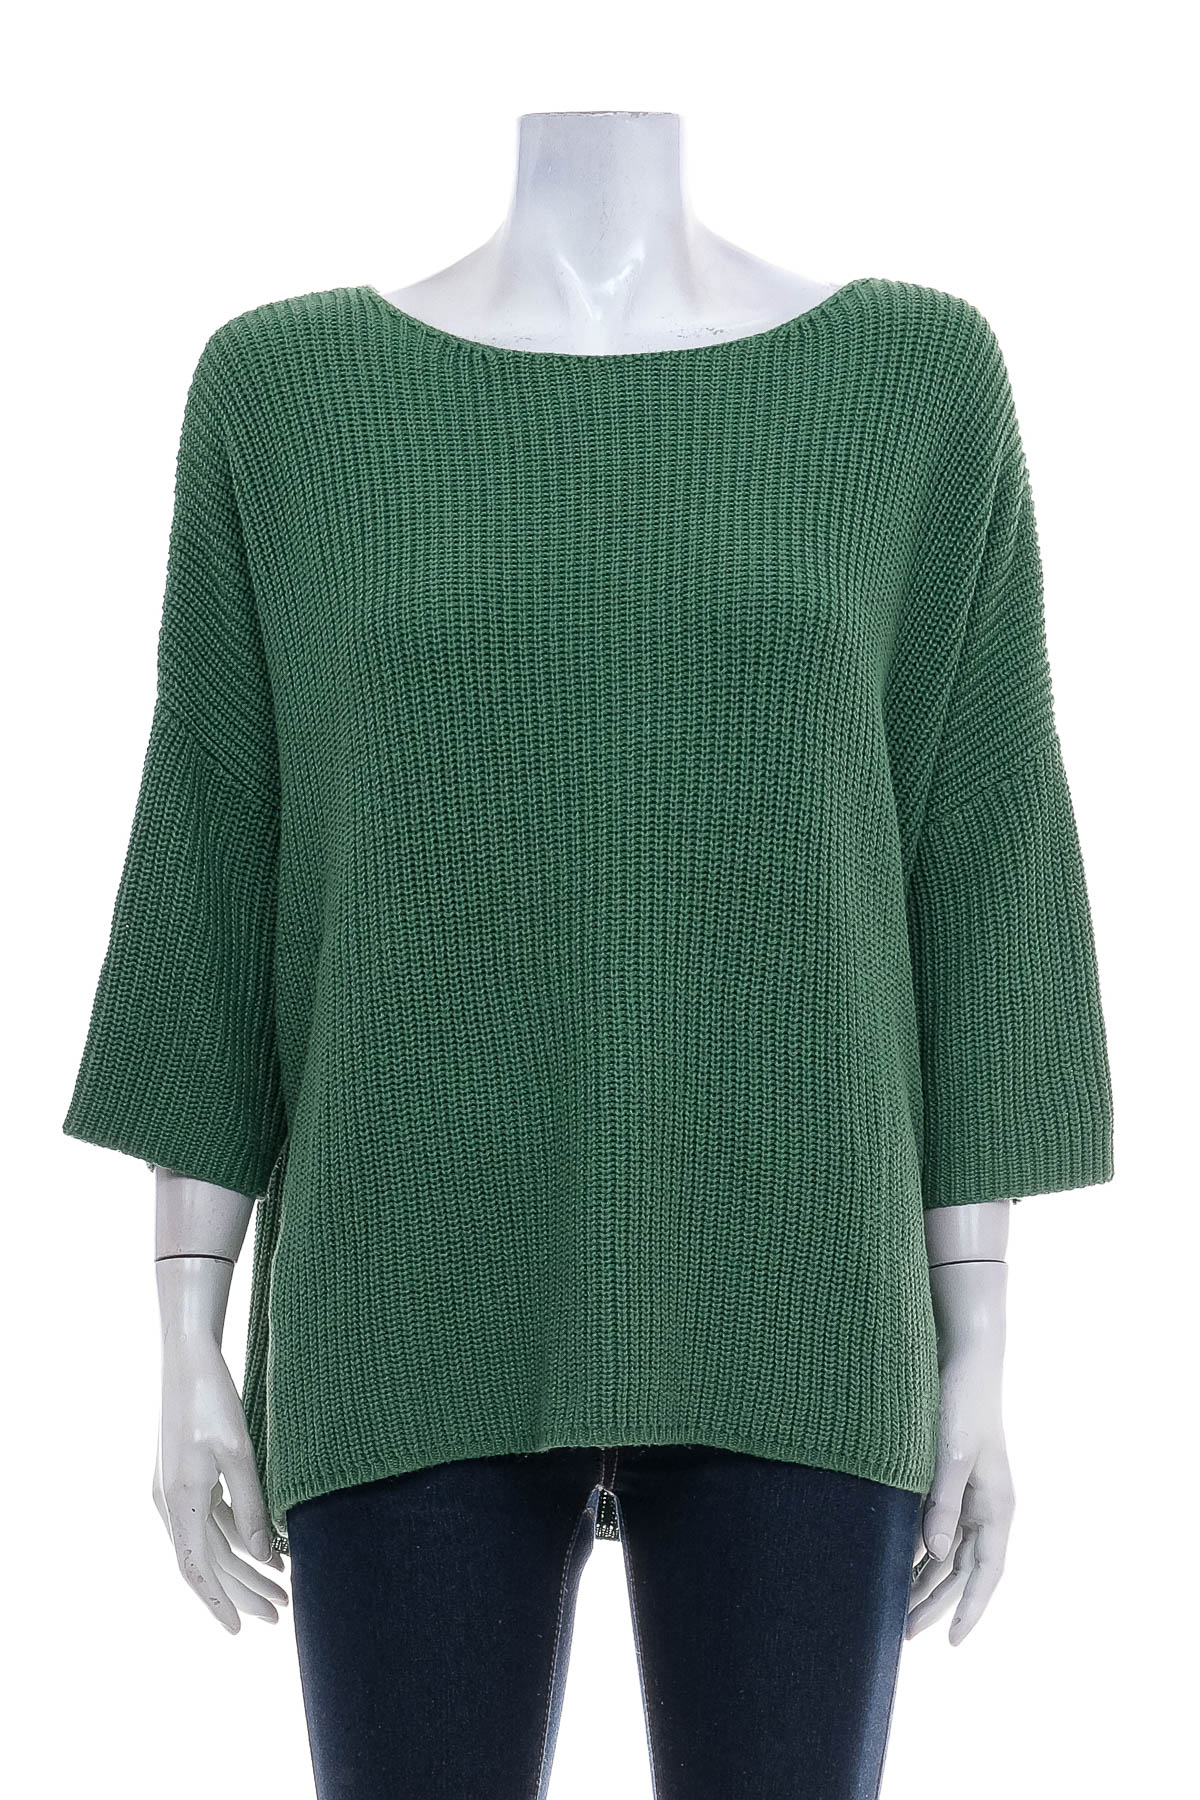 Women's sweater - Kenny S. - 0